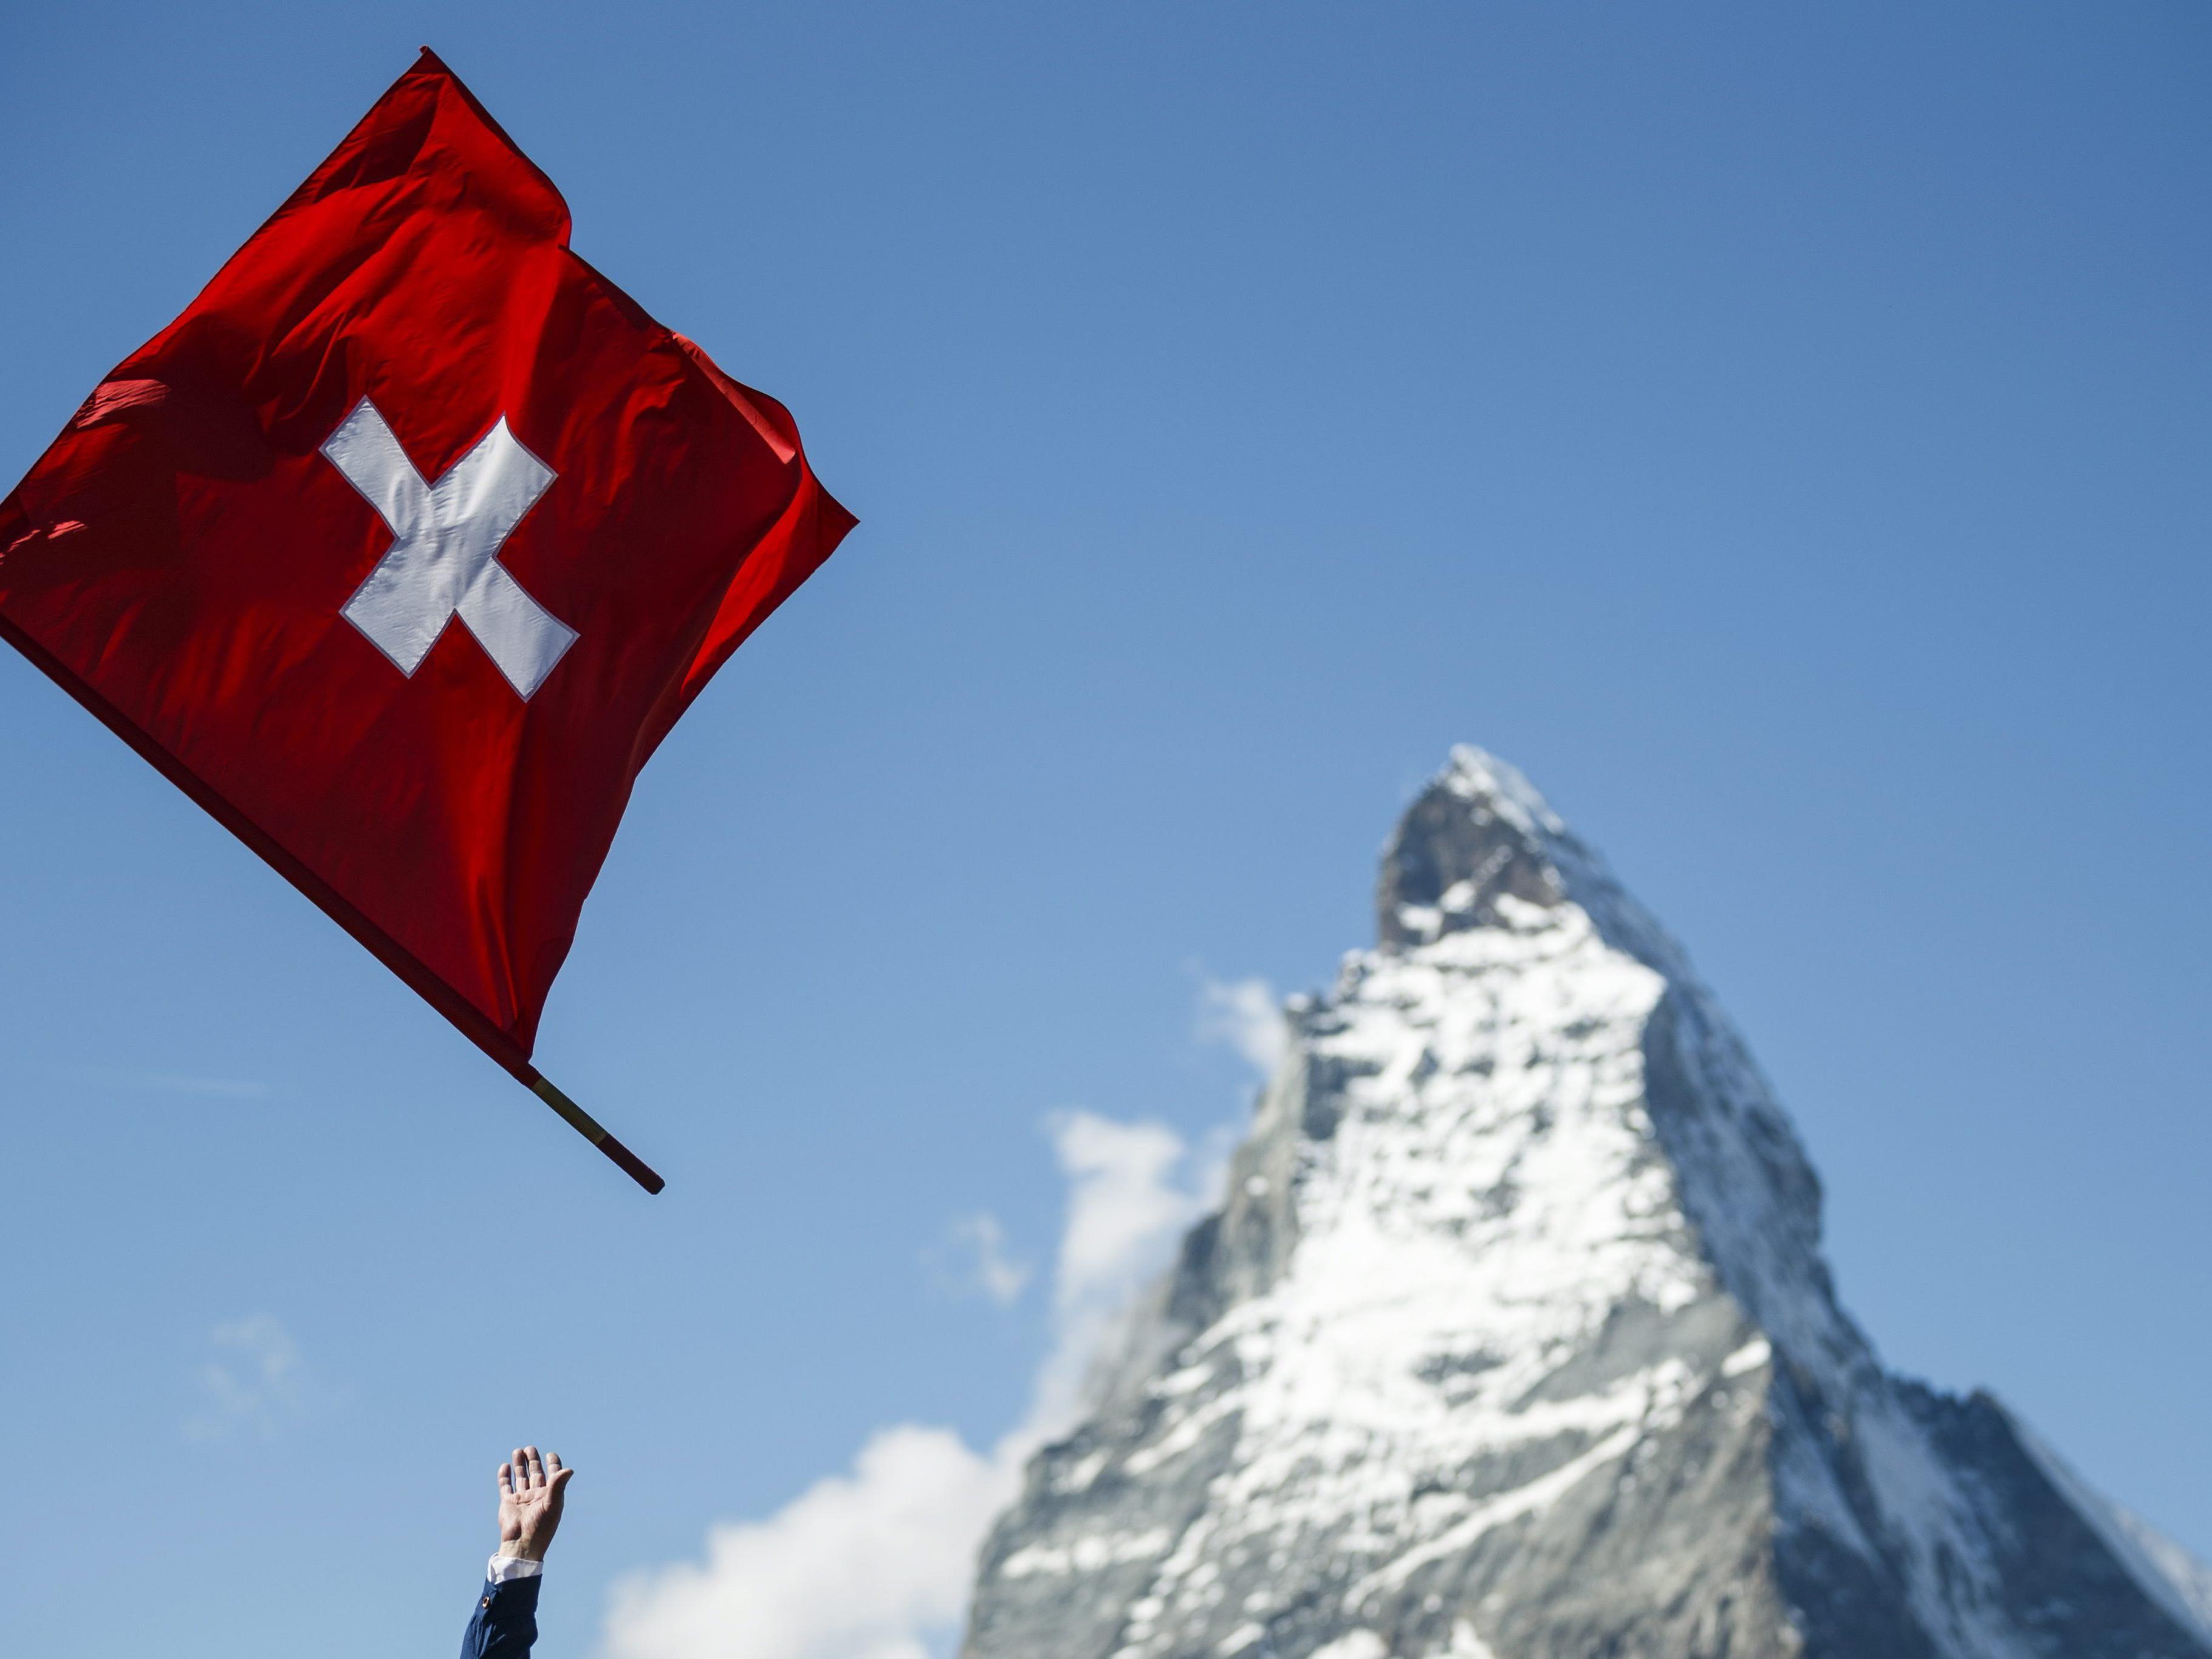 1979 - Die höchste Seilbahn Europas auf das Kleine Matterhorn (3.820 Meter) wird in Betrieb genommen.